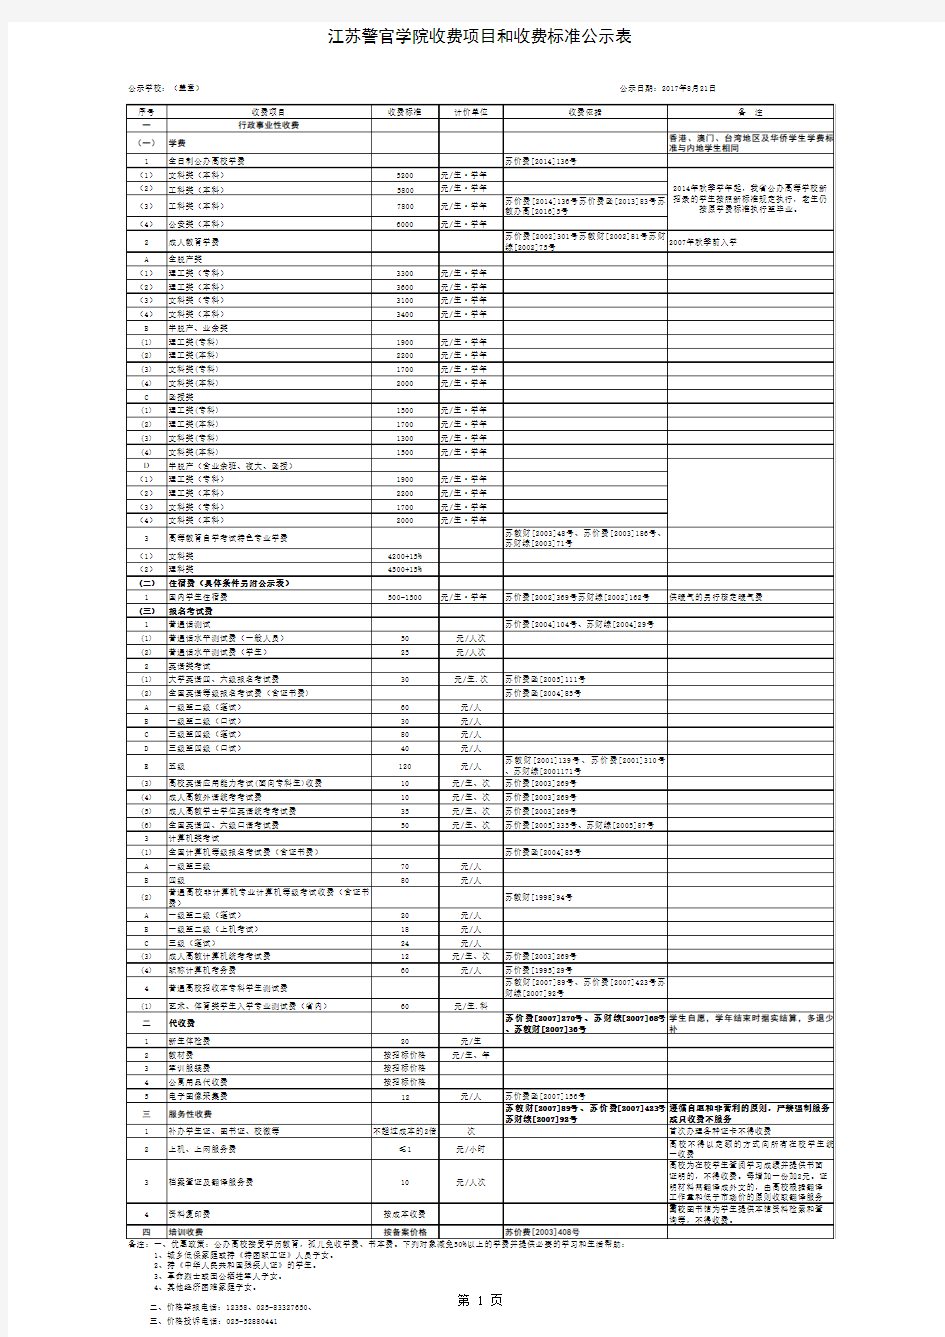 收费项目和收费标准公示表